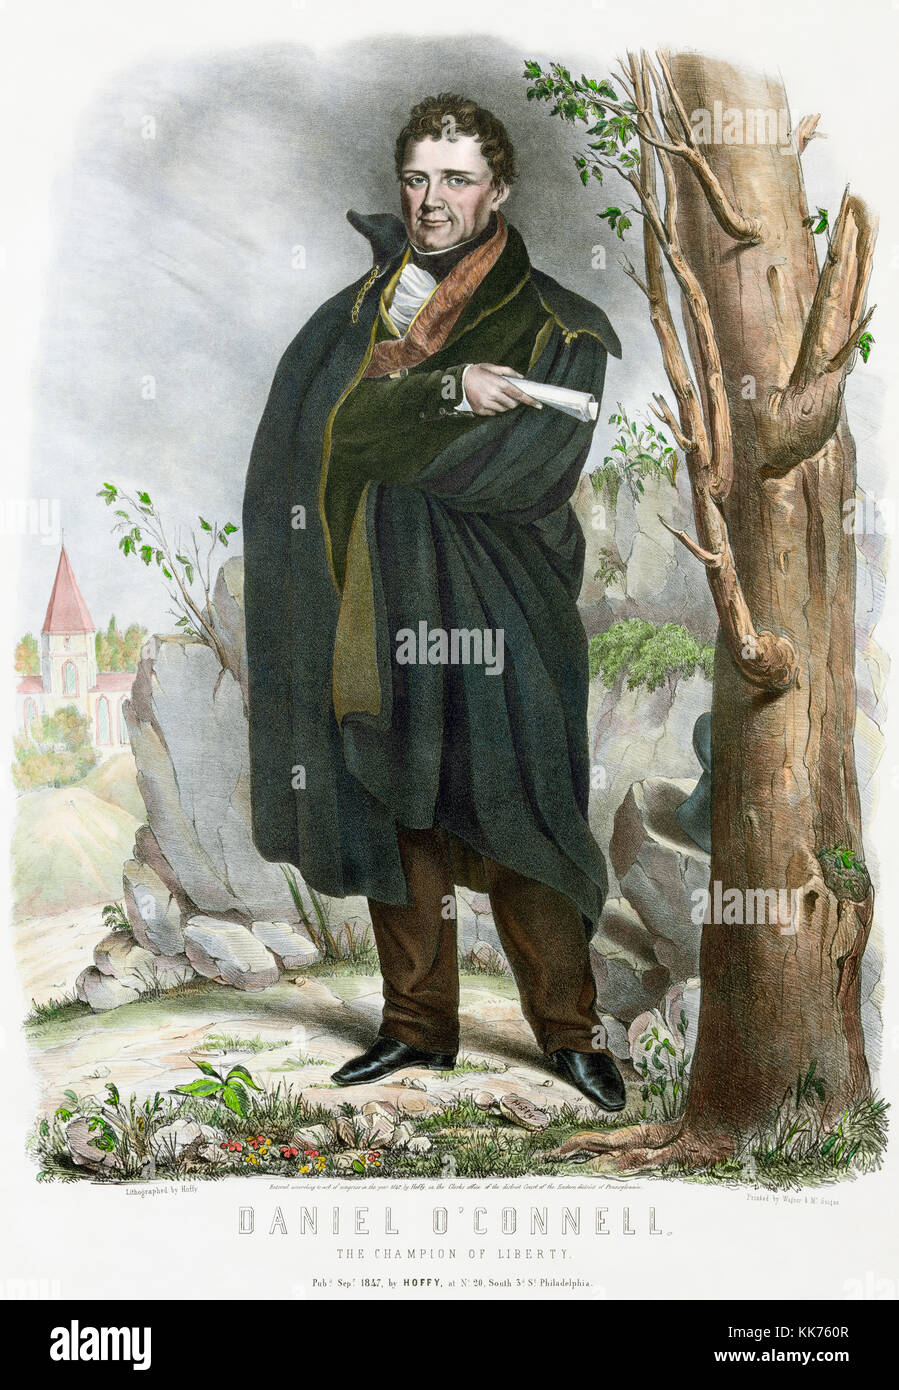 Daniel O'Connell, 1775 - 1847, auch bekannt als der Befreier oder die Befreier. Irische politischer Führer. Stockfoto